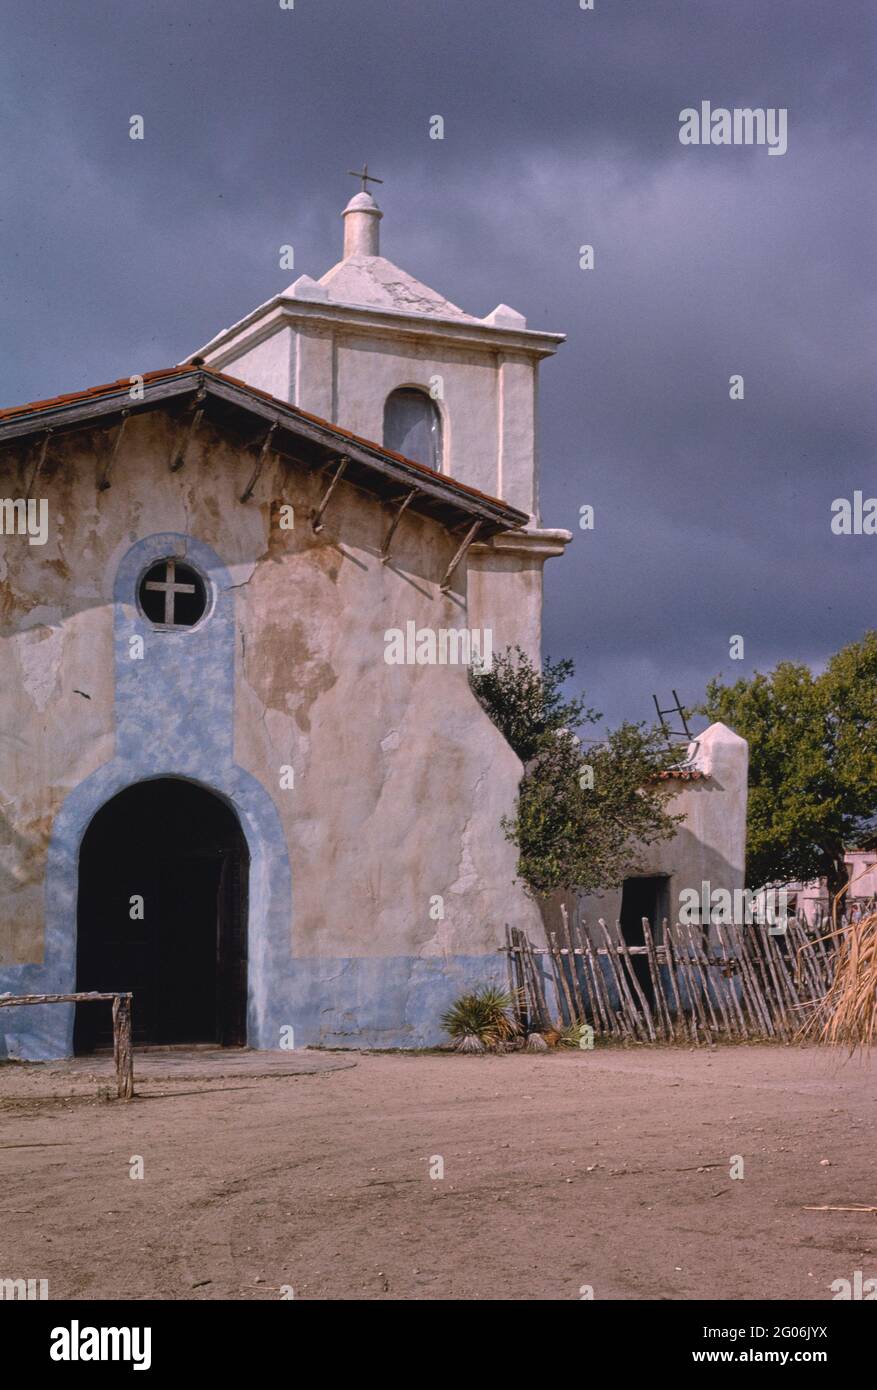 Amérique des années 1990 - Alamo Village Church / Mission, Brackettville, Texas 1993 Banque D'Images